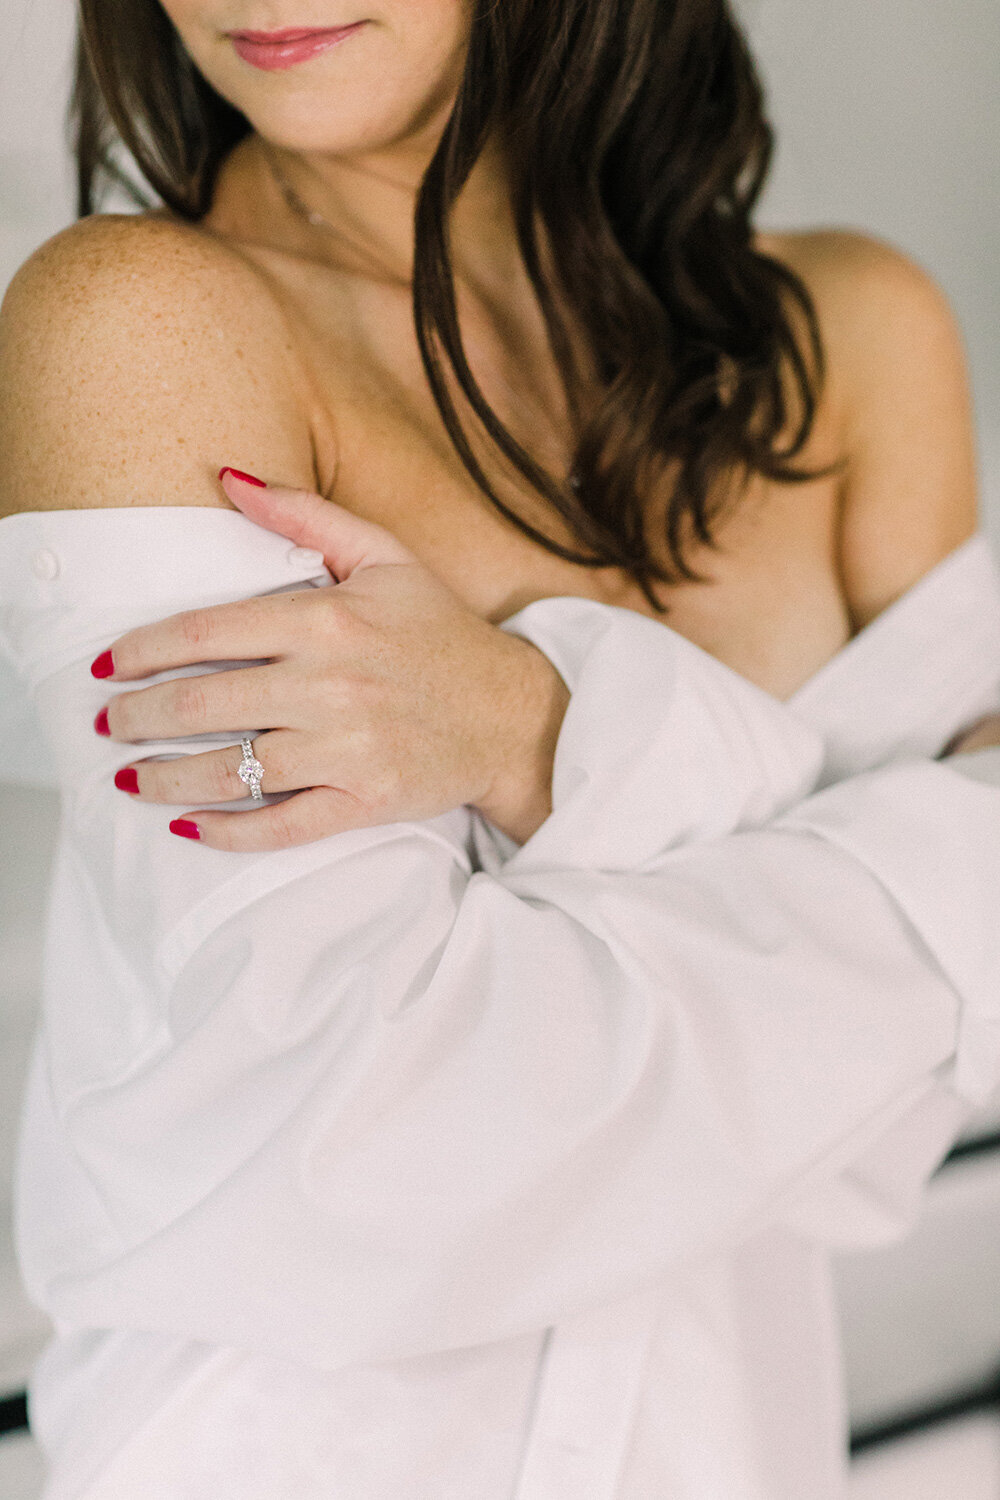 Woman wears partner's white shirt for boudoir shoot.